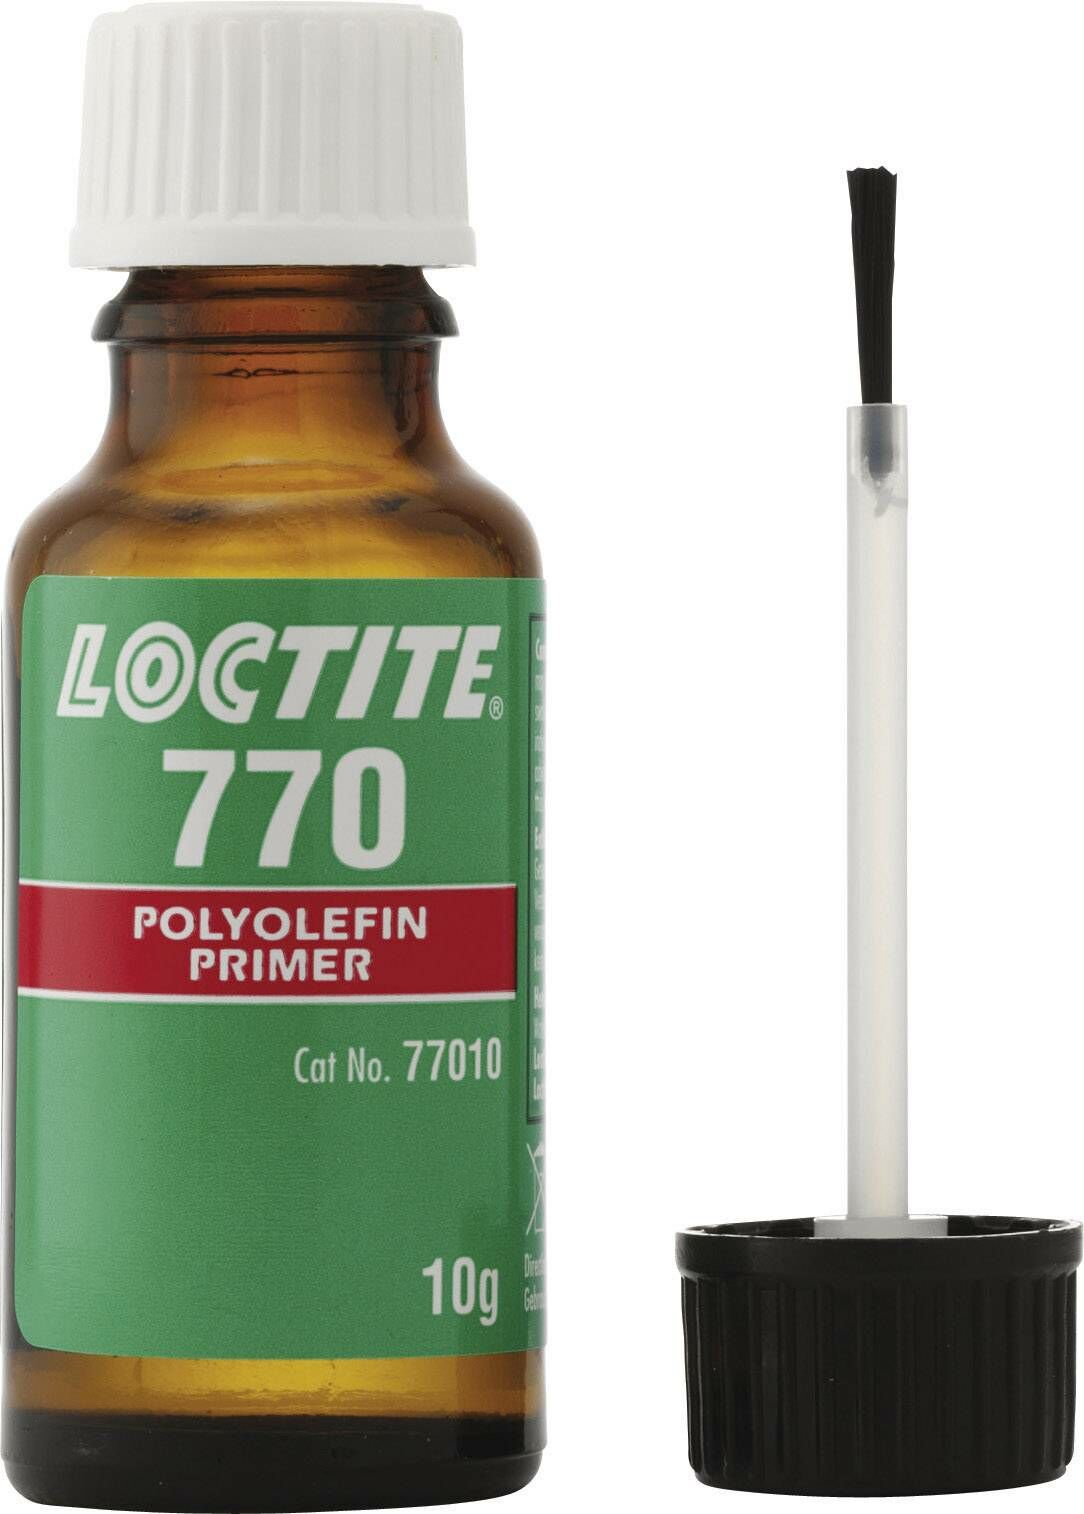 LOCTITE SF 770 Primer Yüzey Hazırlayıcı 10g